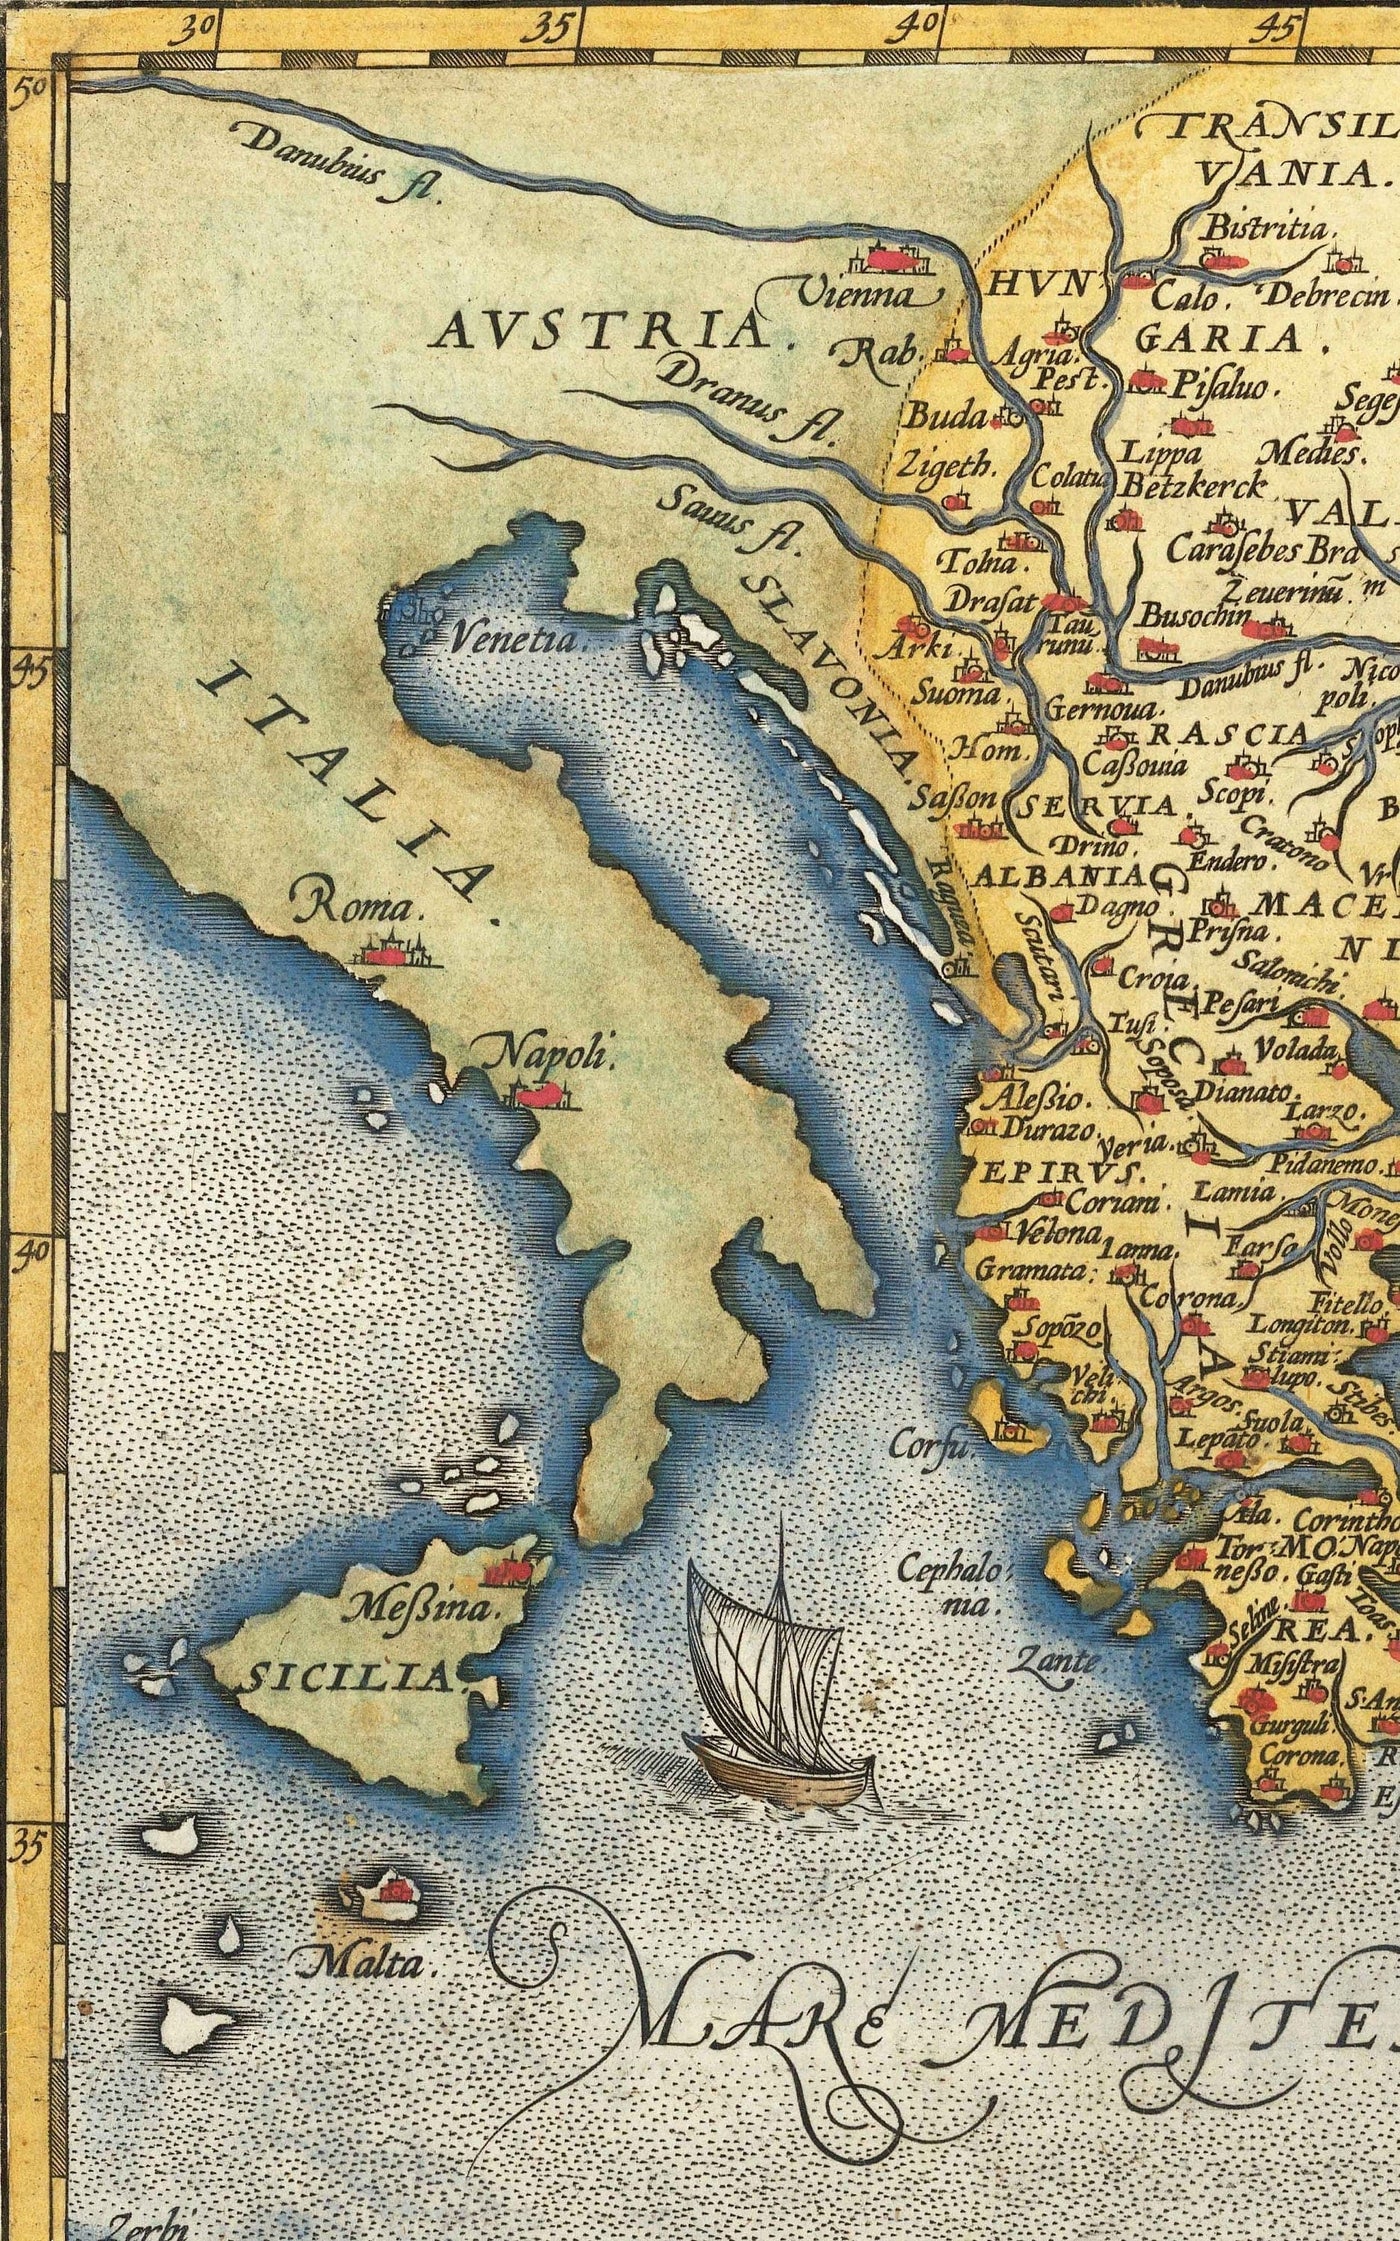 Old Ottoman Empire Map, 1584 par Ortelius - Turquie, Arabie saoudite, Moyen-Orient, Iran, Israël, Grèce, mer Rouge, Afrique